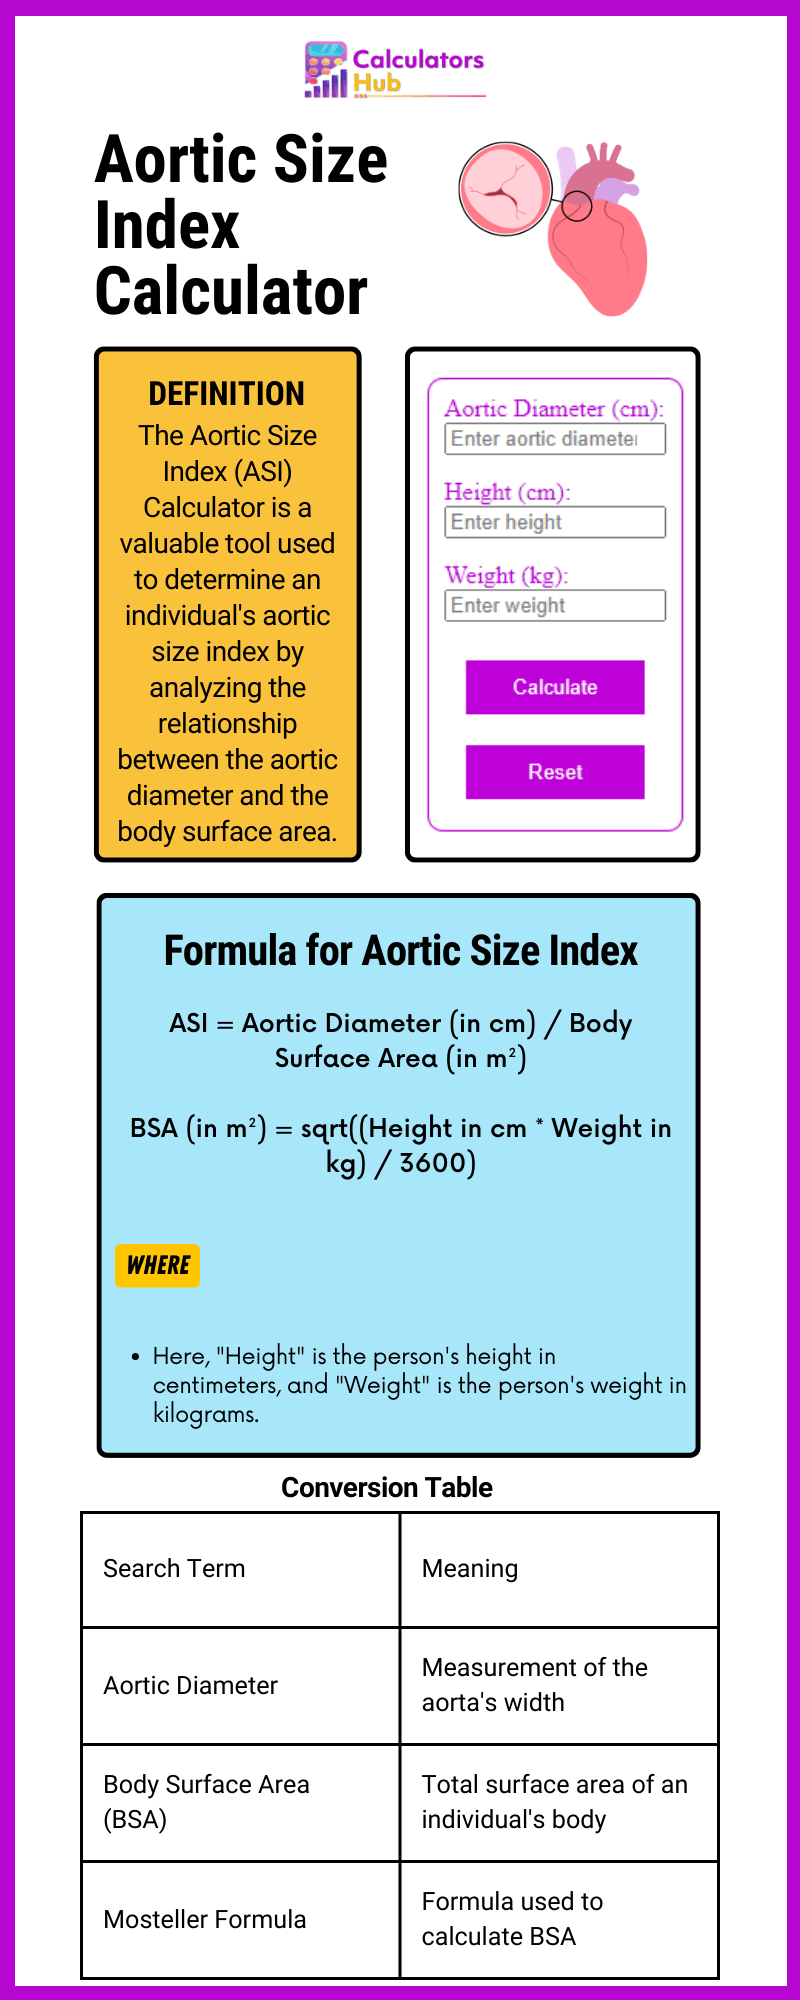 Aortic Size Index Calculator